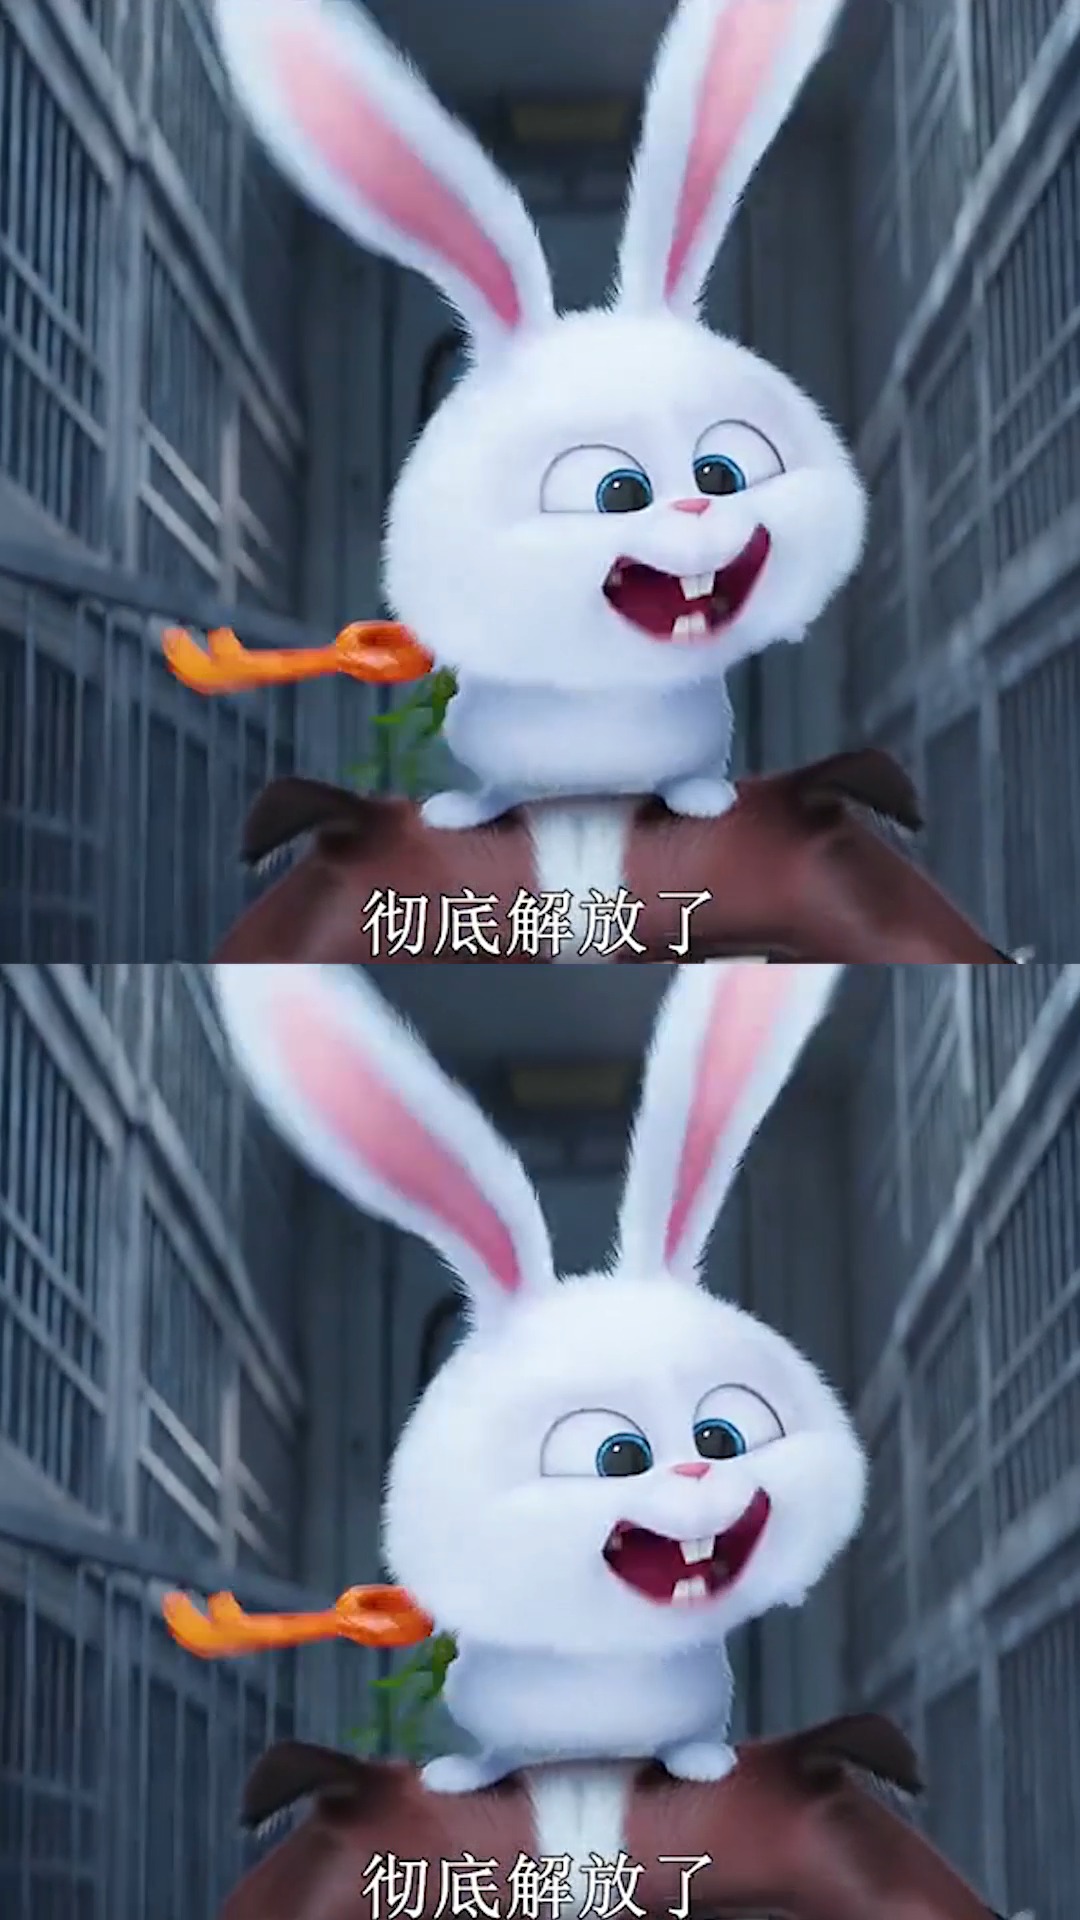 表面看似很可爱的小白兔,实际是凶狠的黑老大!(一)